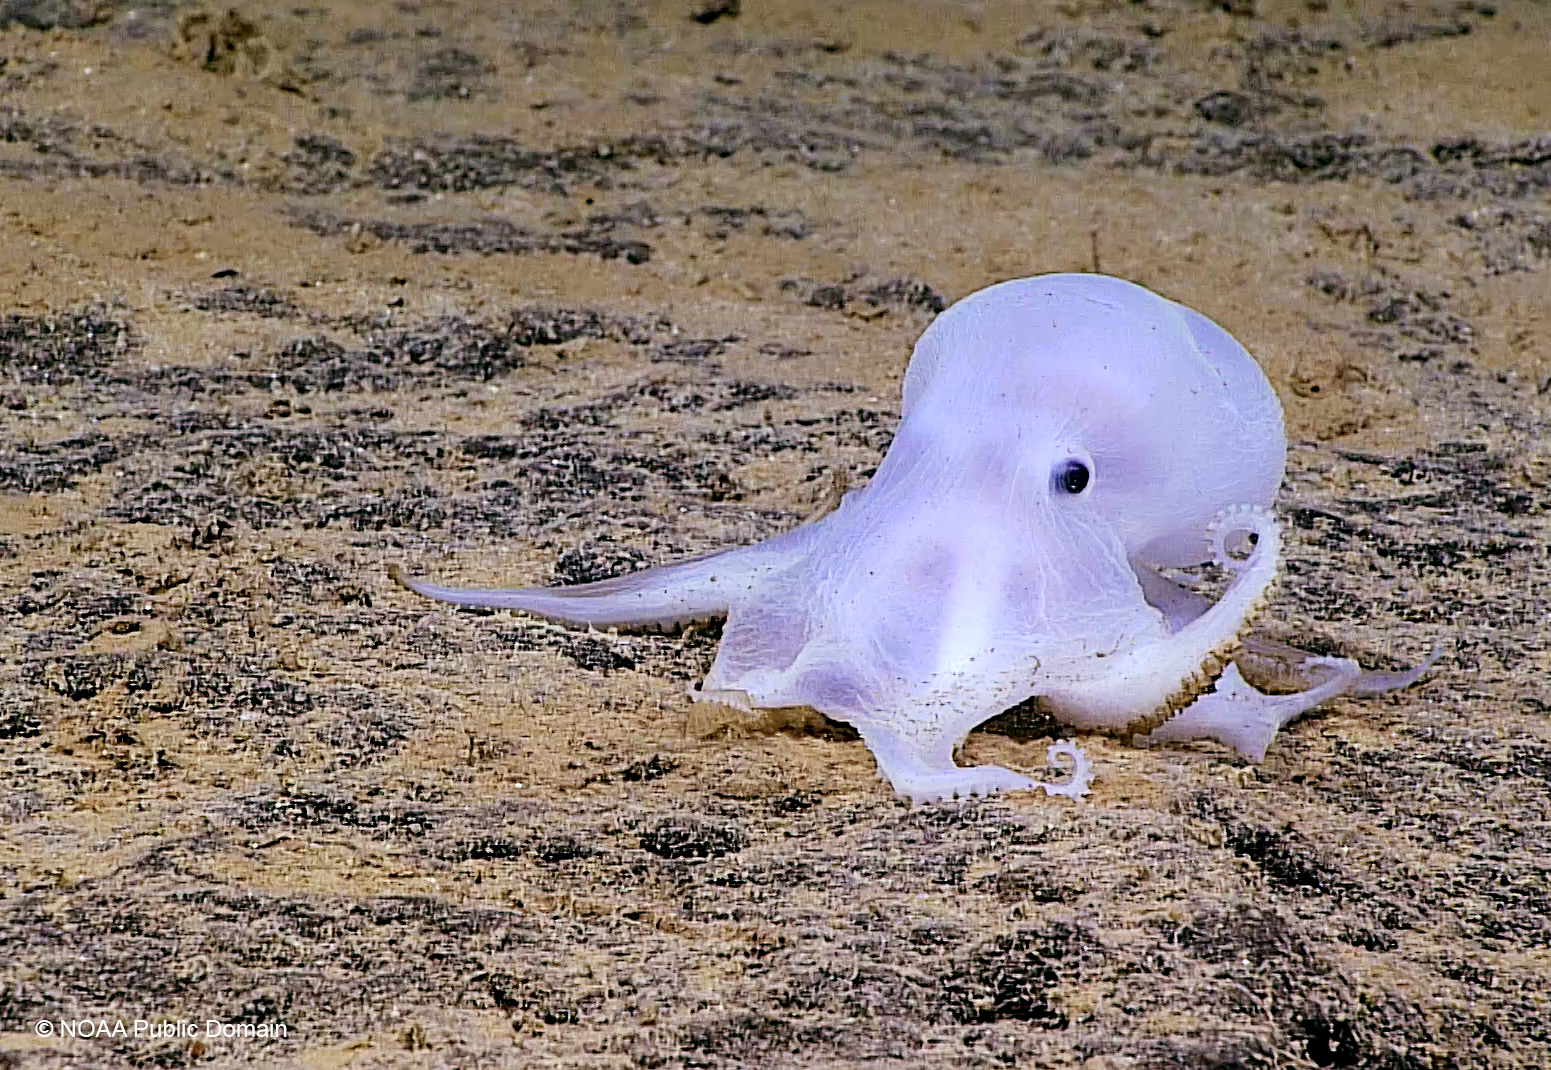 在夏威夷海下4,290米發現的深海章魚（Ghost Octopus），牠因缺乏色素細胞，身體呈半透明，可愛的模樣像極了卡通《鬼馬小精靈》（Casper）的主角。牠們在深海海綿殘骸上產卵、孵卵，而這海綿上附著多金屬結核，正是海底採礦業虎視眈眈的目標之一。